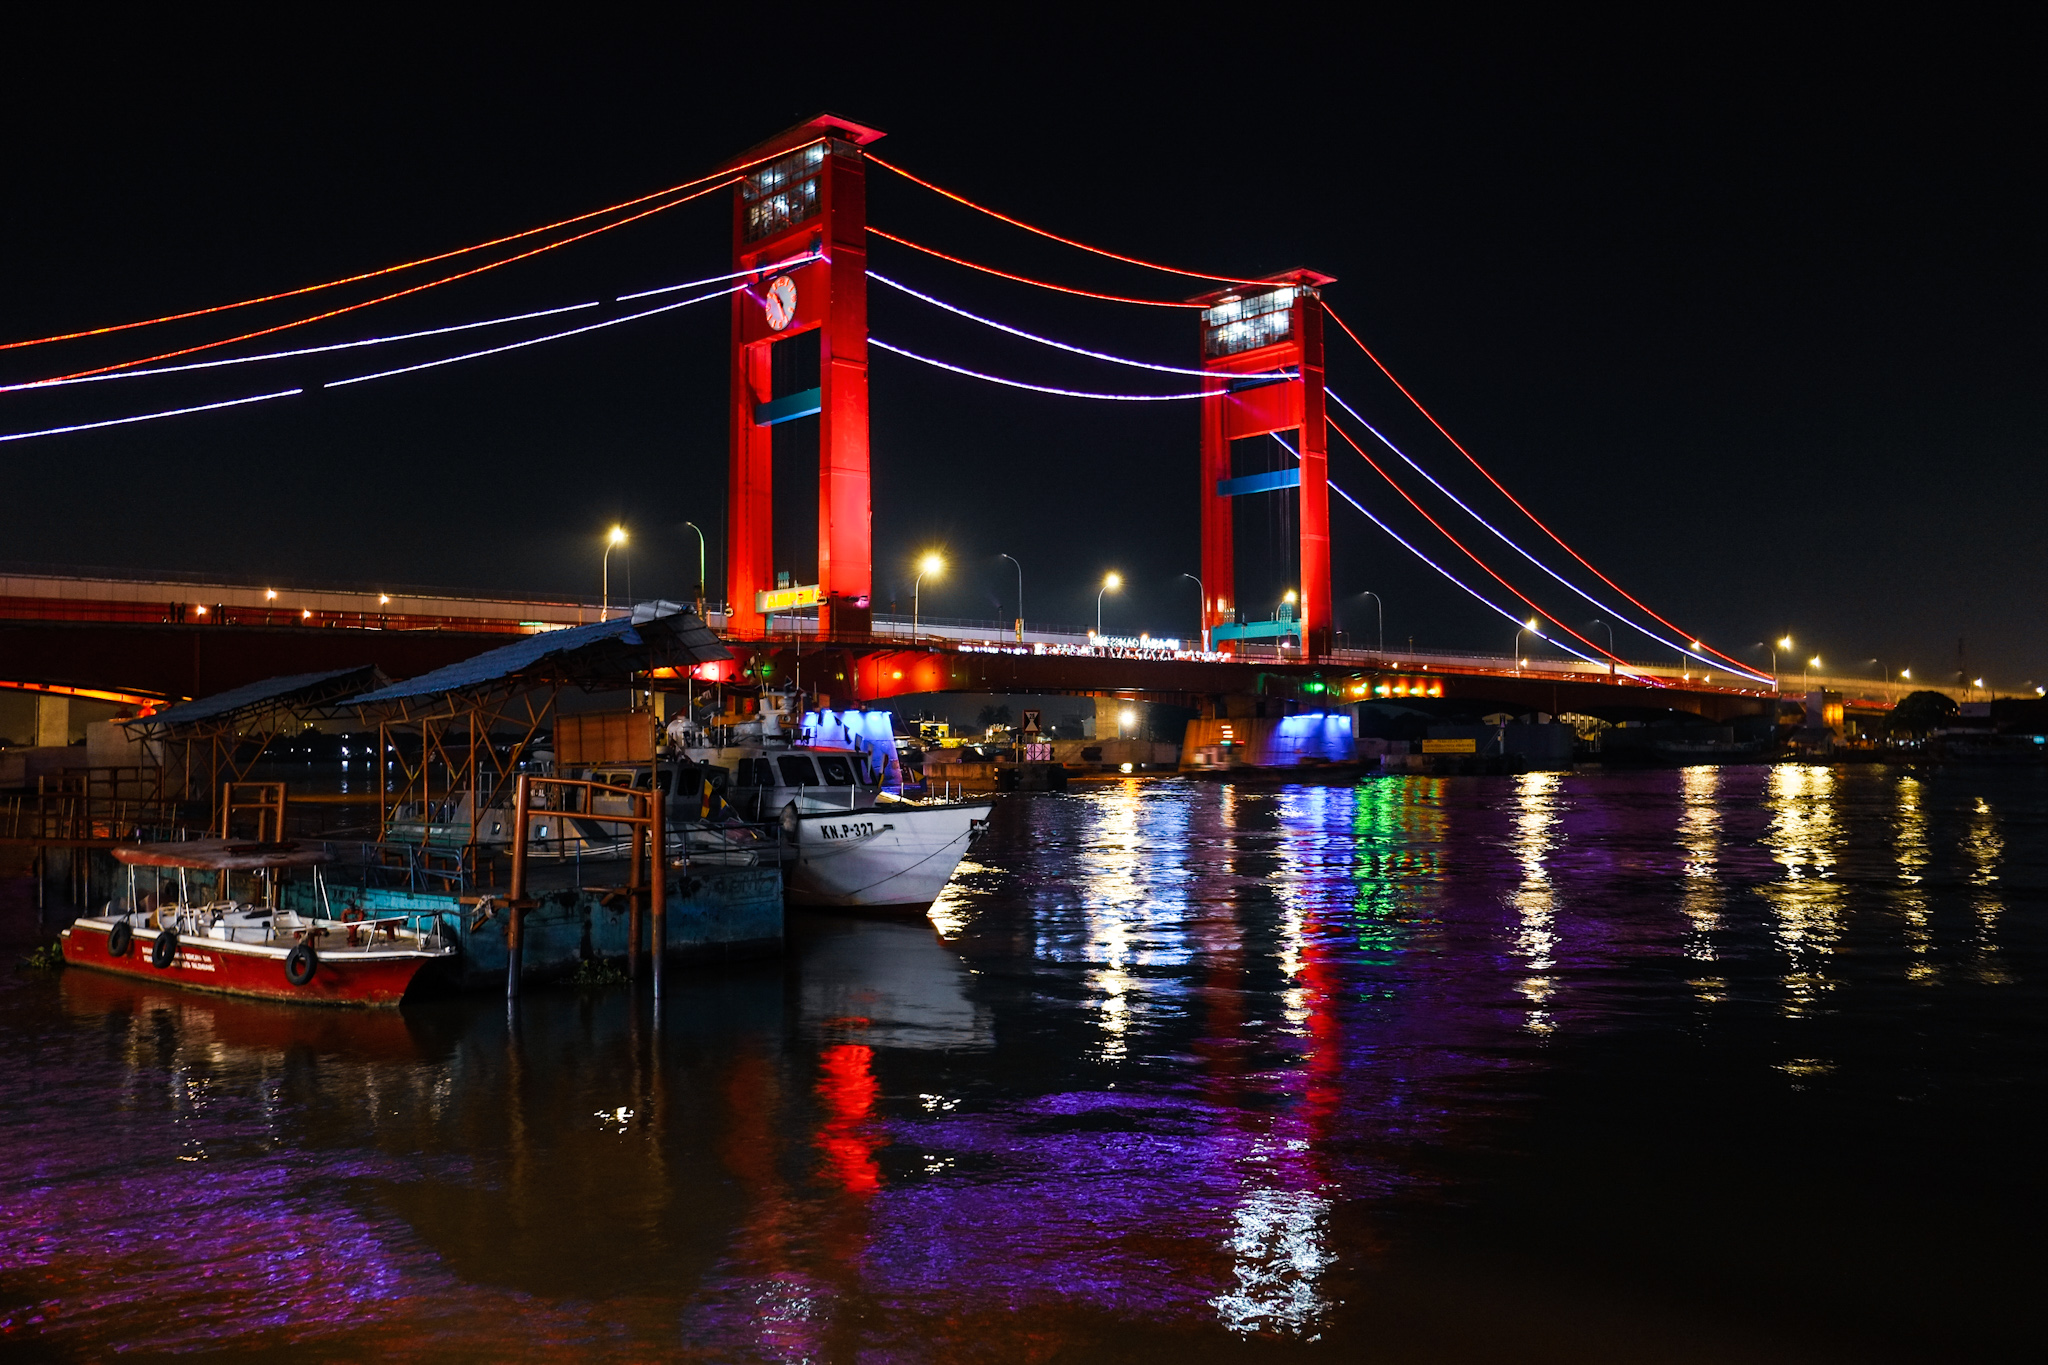 Suasana Jembatan Ampera pada malam hari | Foto: travelingyuk.com